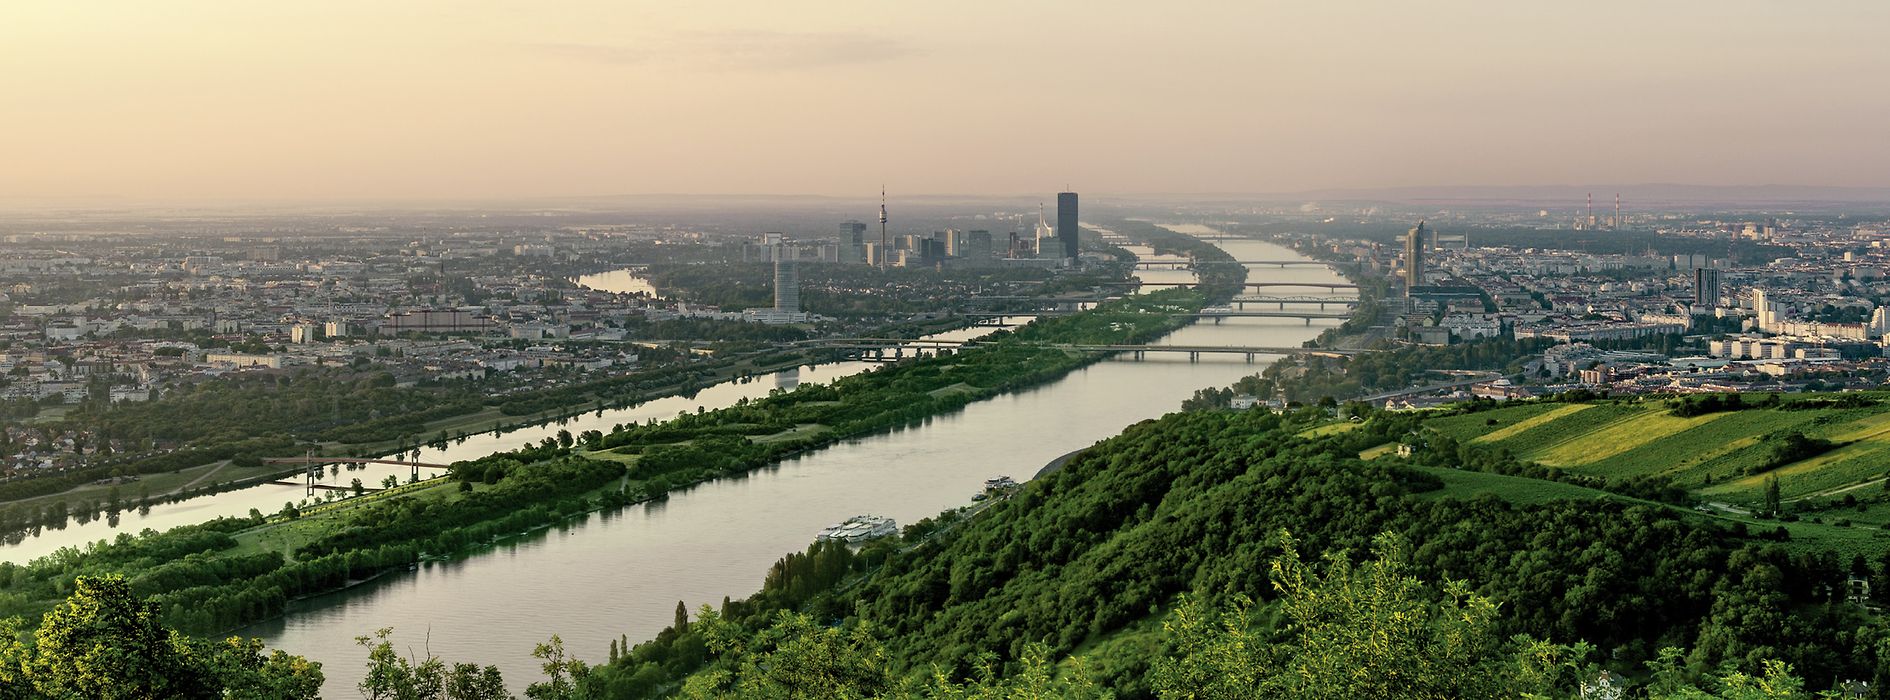 L'Île du Danube et Vienne vues du ciel